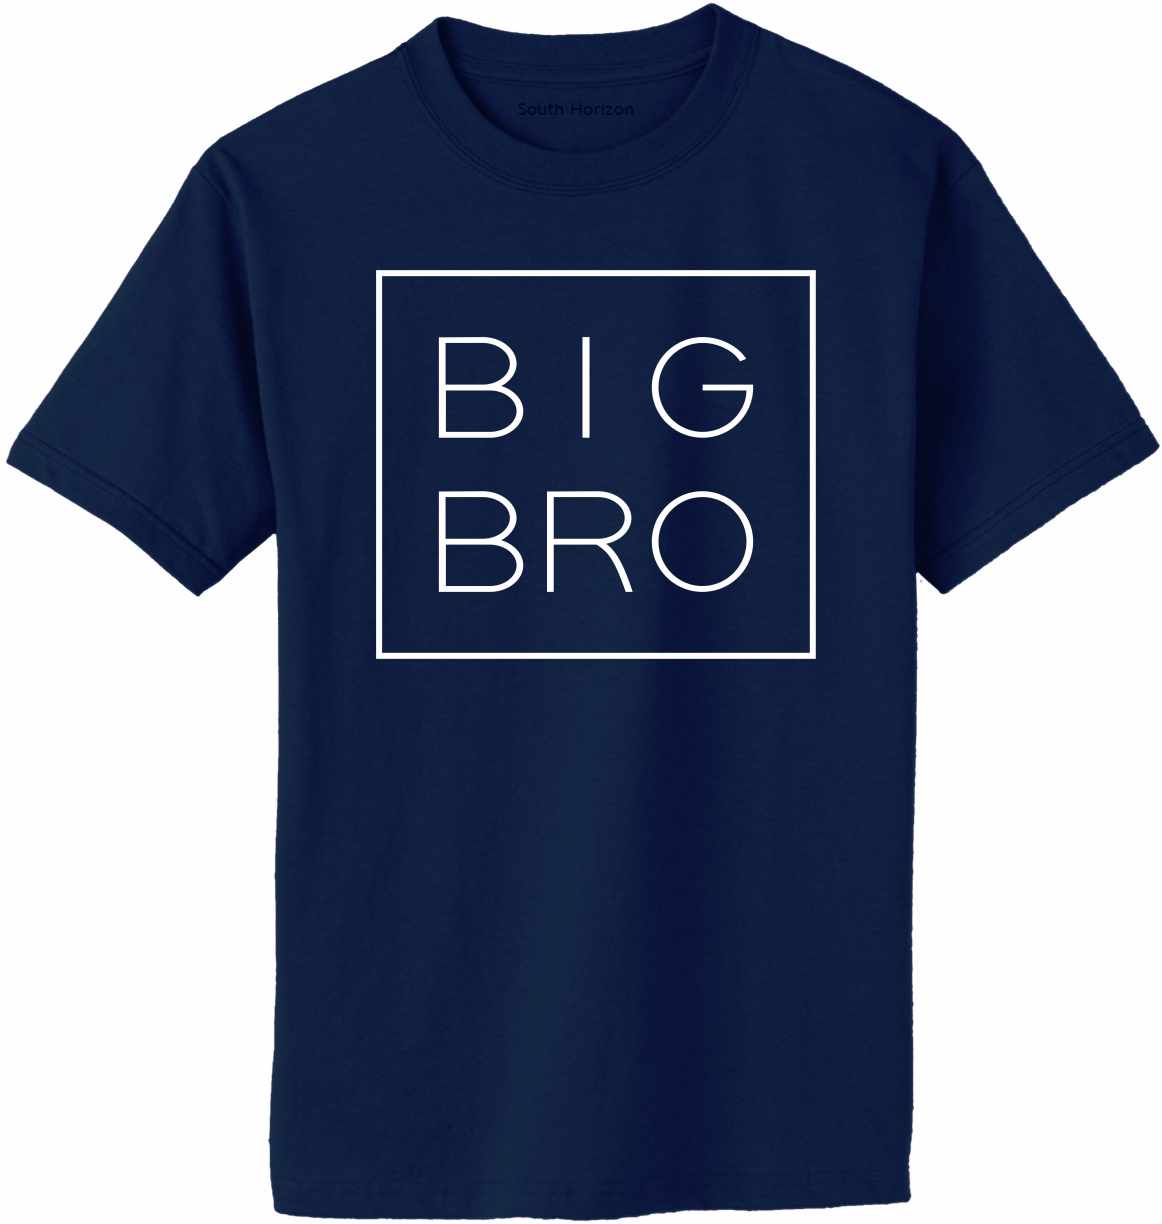 Big Bro - Box on Adult T-Shirt